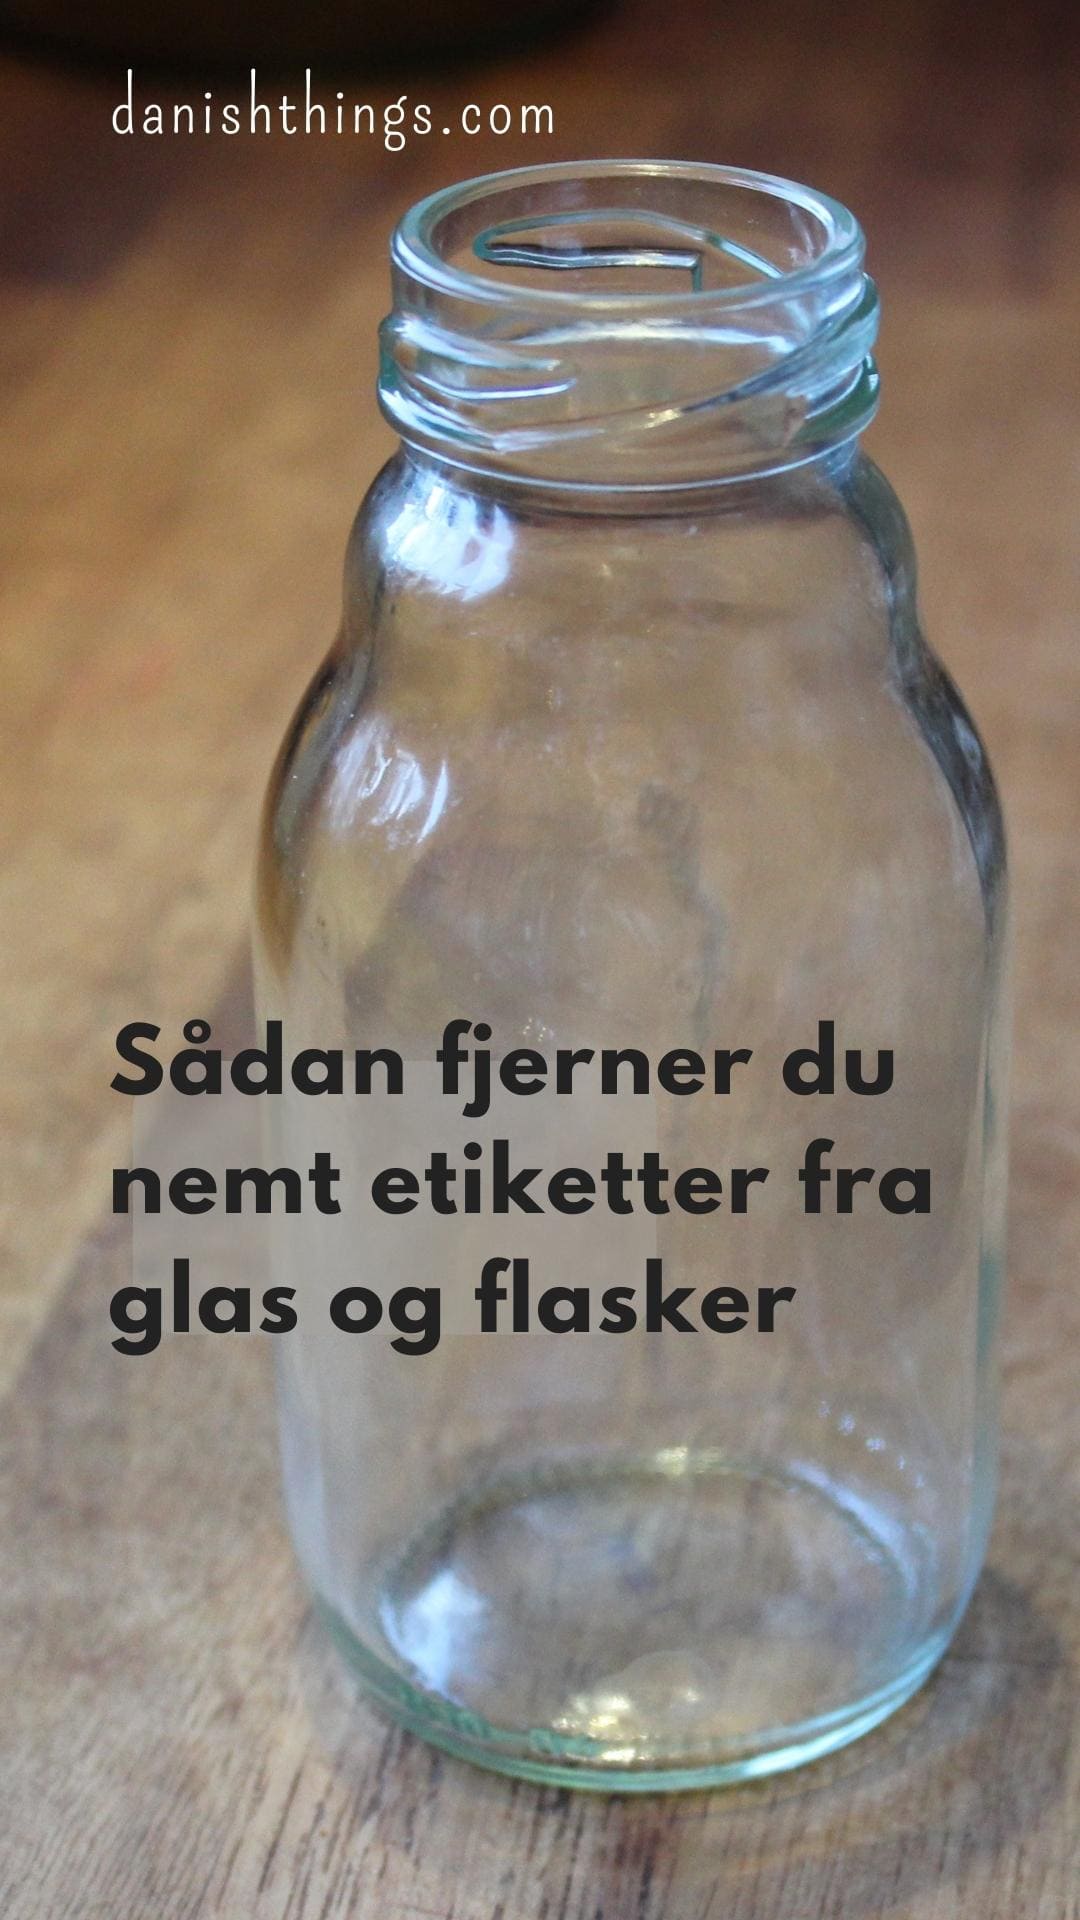 Skygge element psykologi Sådan fjerner du nemt etiketter fra glas og flasker - Danish Things